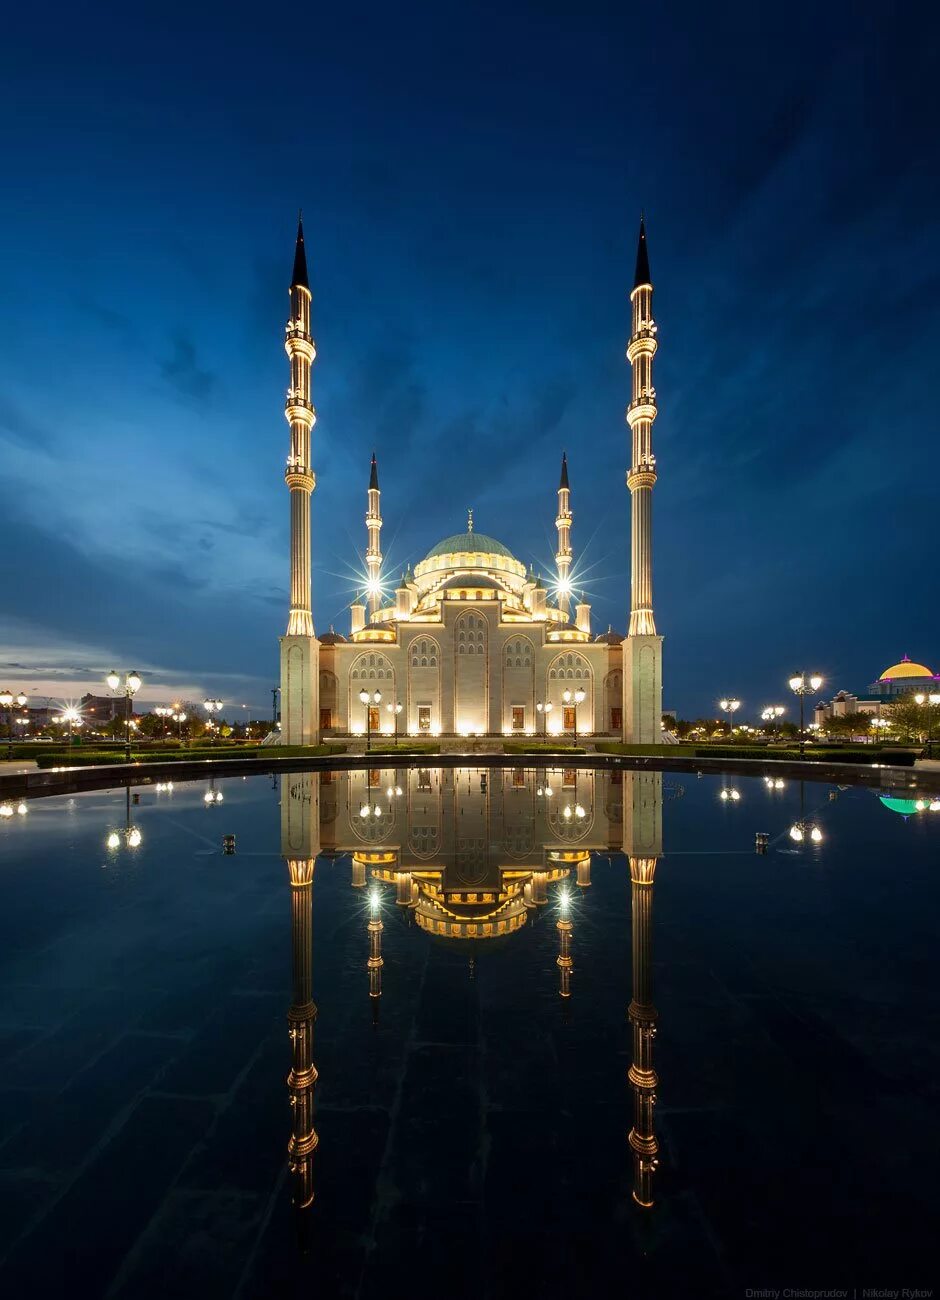 Сердце Чечни Грозный. Мечеть сердце Чечни в Грозном. Мечеть сердце Чечни фото. Грозный мечеть сердце мусульманства.